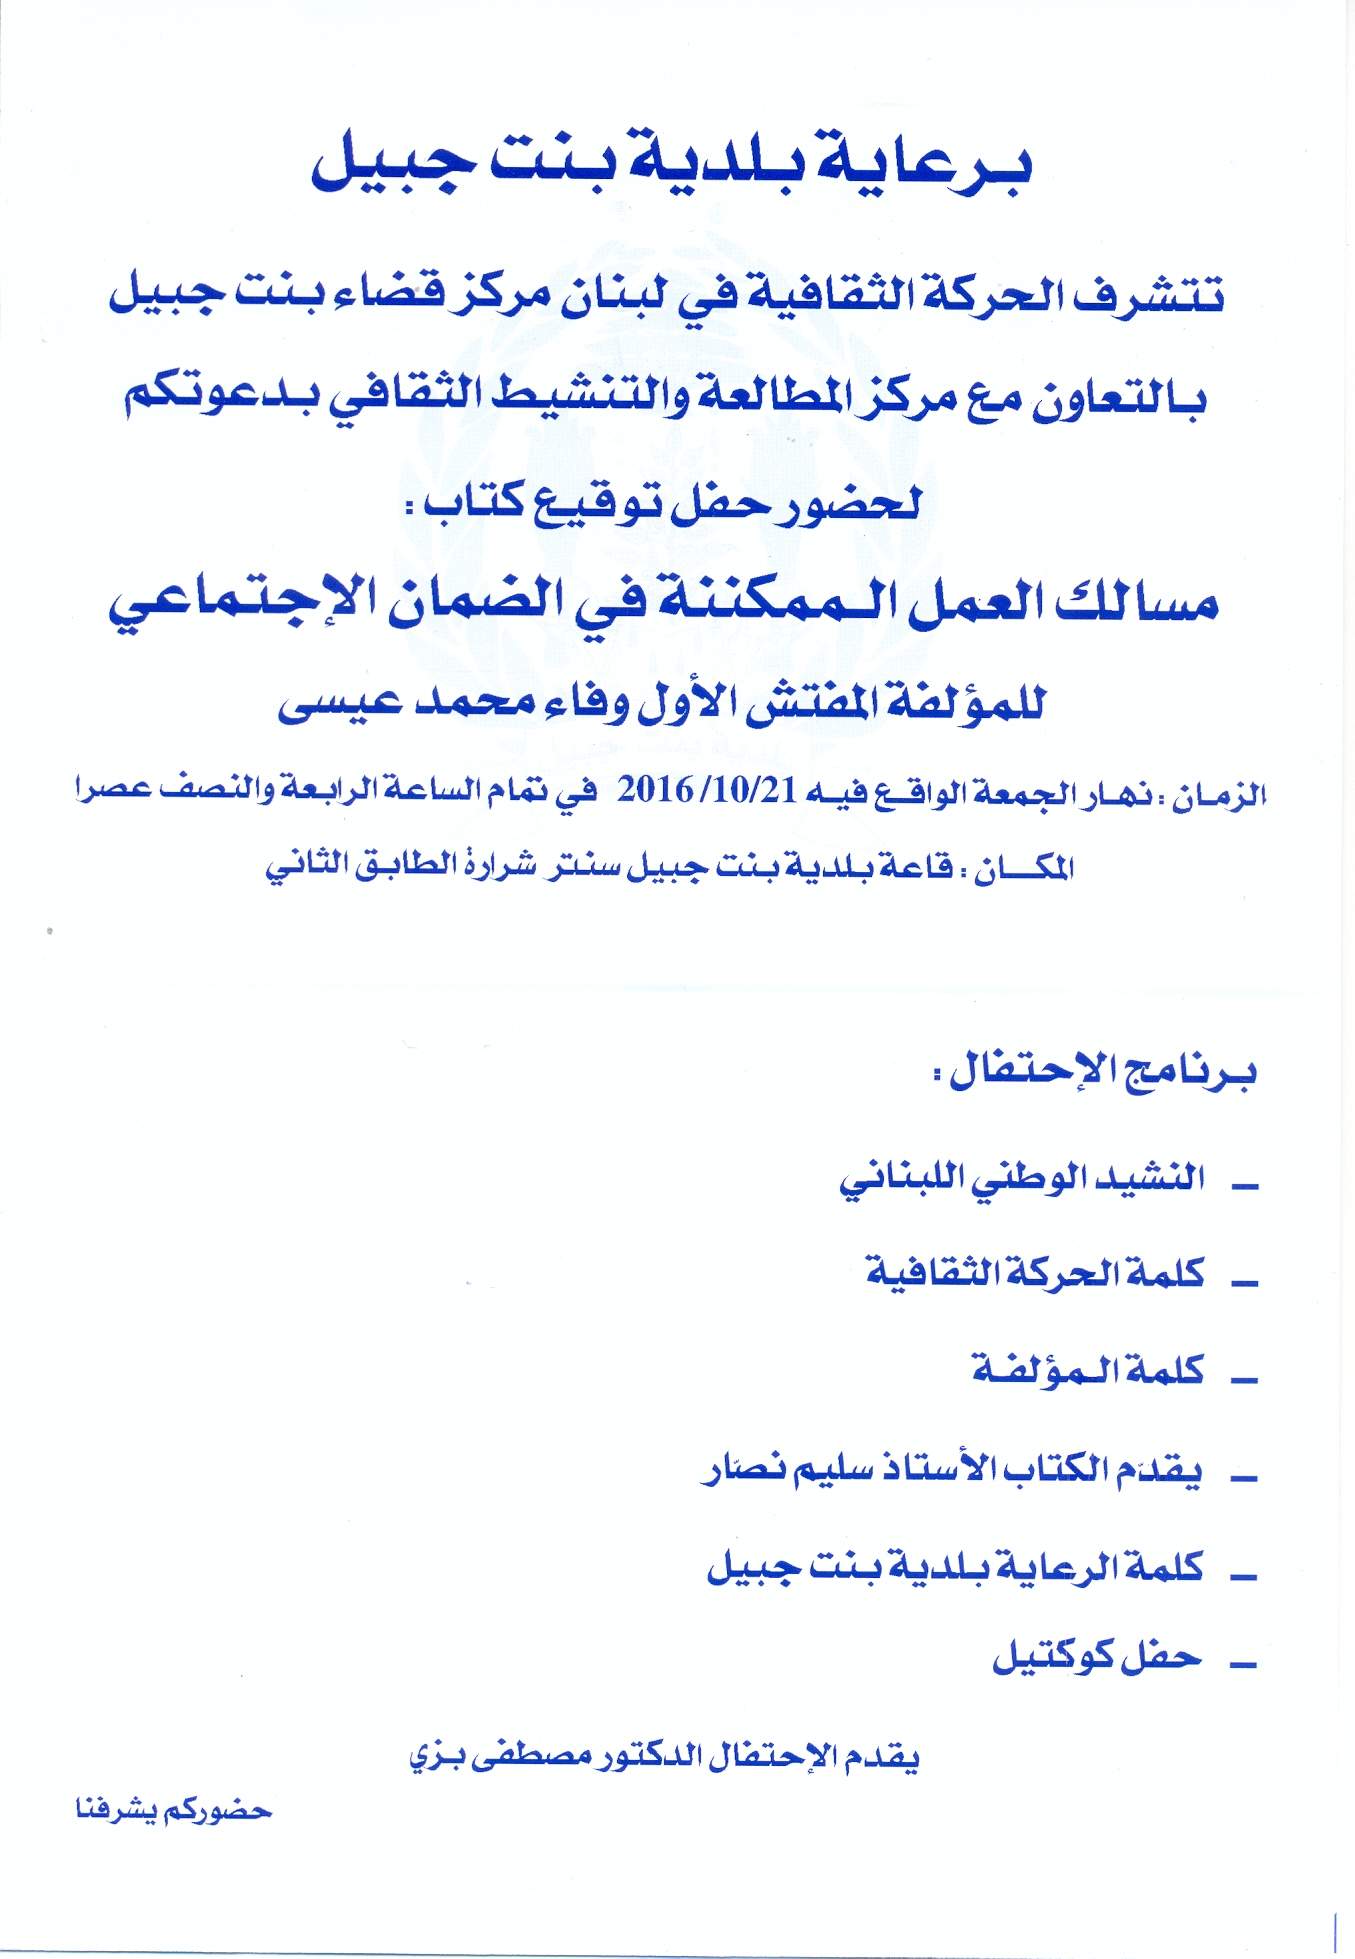 دعوة لحضور حفل توقيع كتاب &quot;مسالك العمل الممكننة في الضمان الإجتماعي&quot; في بنت جبيل